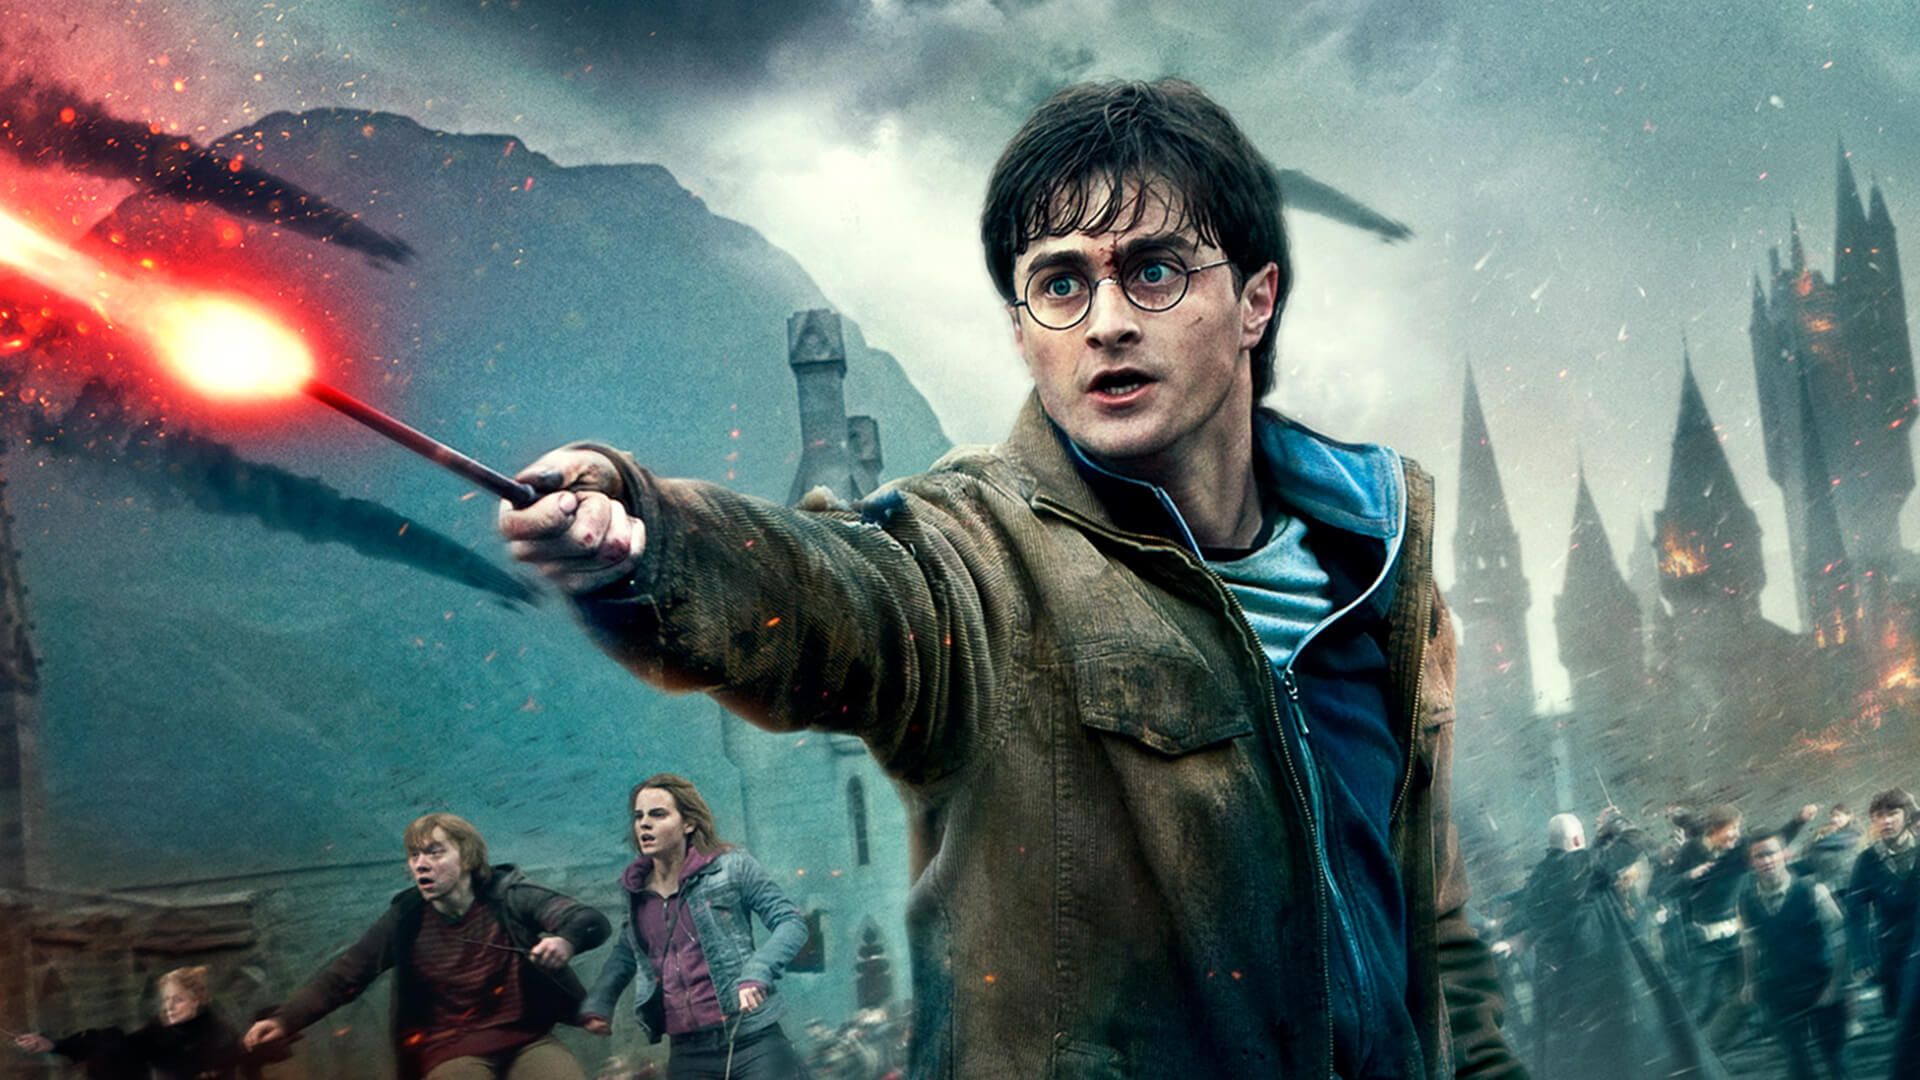 Harry Potter jako serial. Nowa adaptacja książek to policzek w twarz fanów popkultury